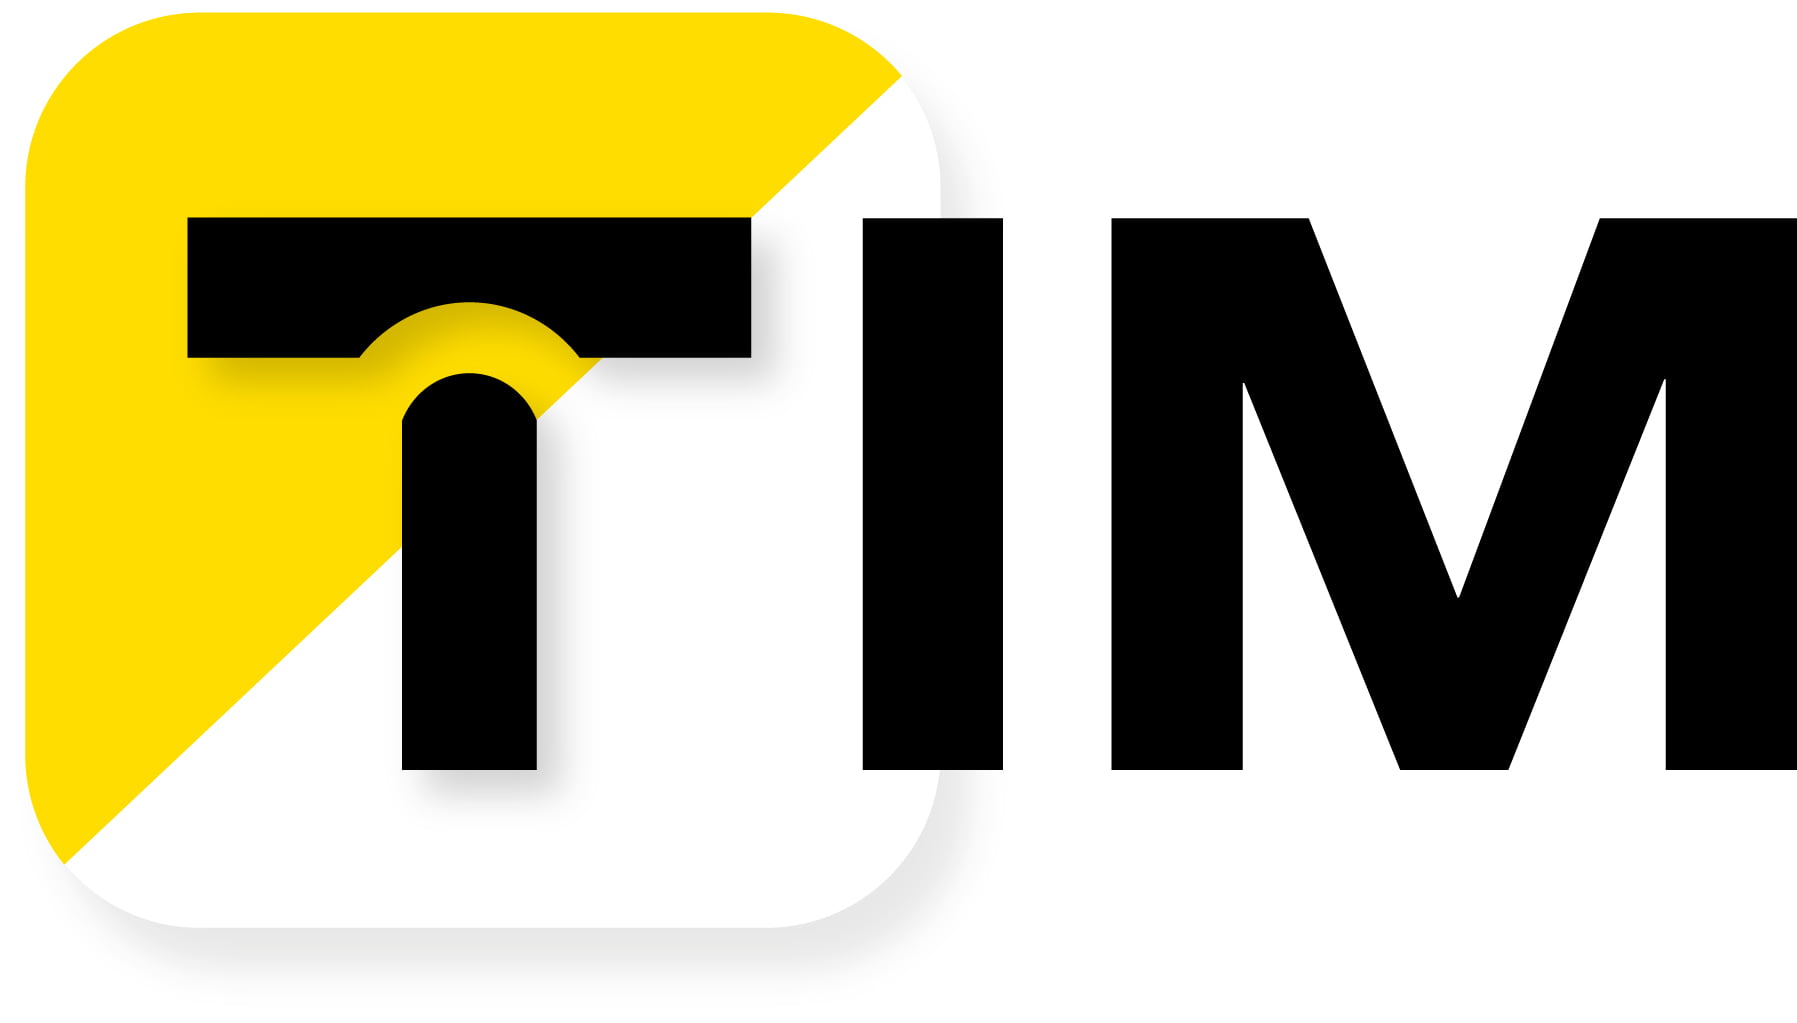 Logo_TIM_SA